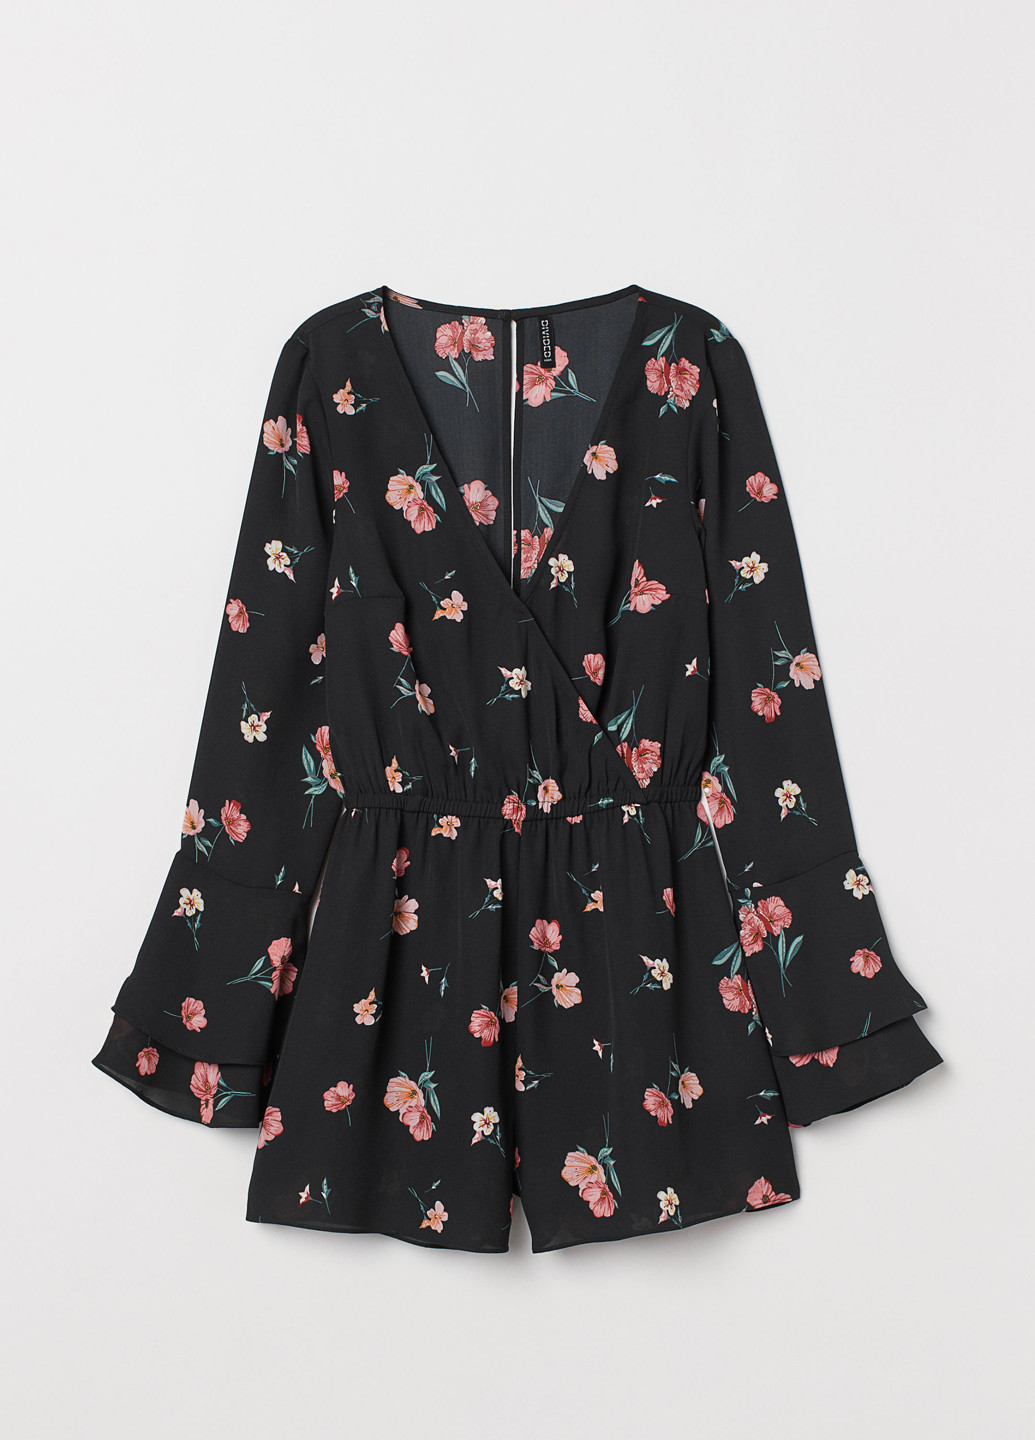 Комбинезон H&M комбинезон-шорты цветочный чёрный кэжуал